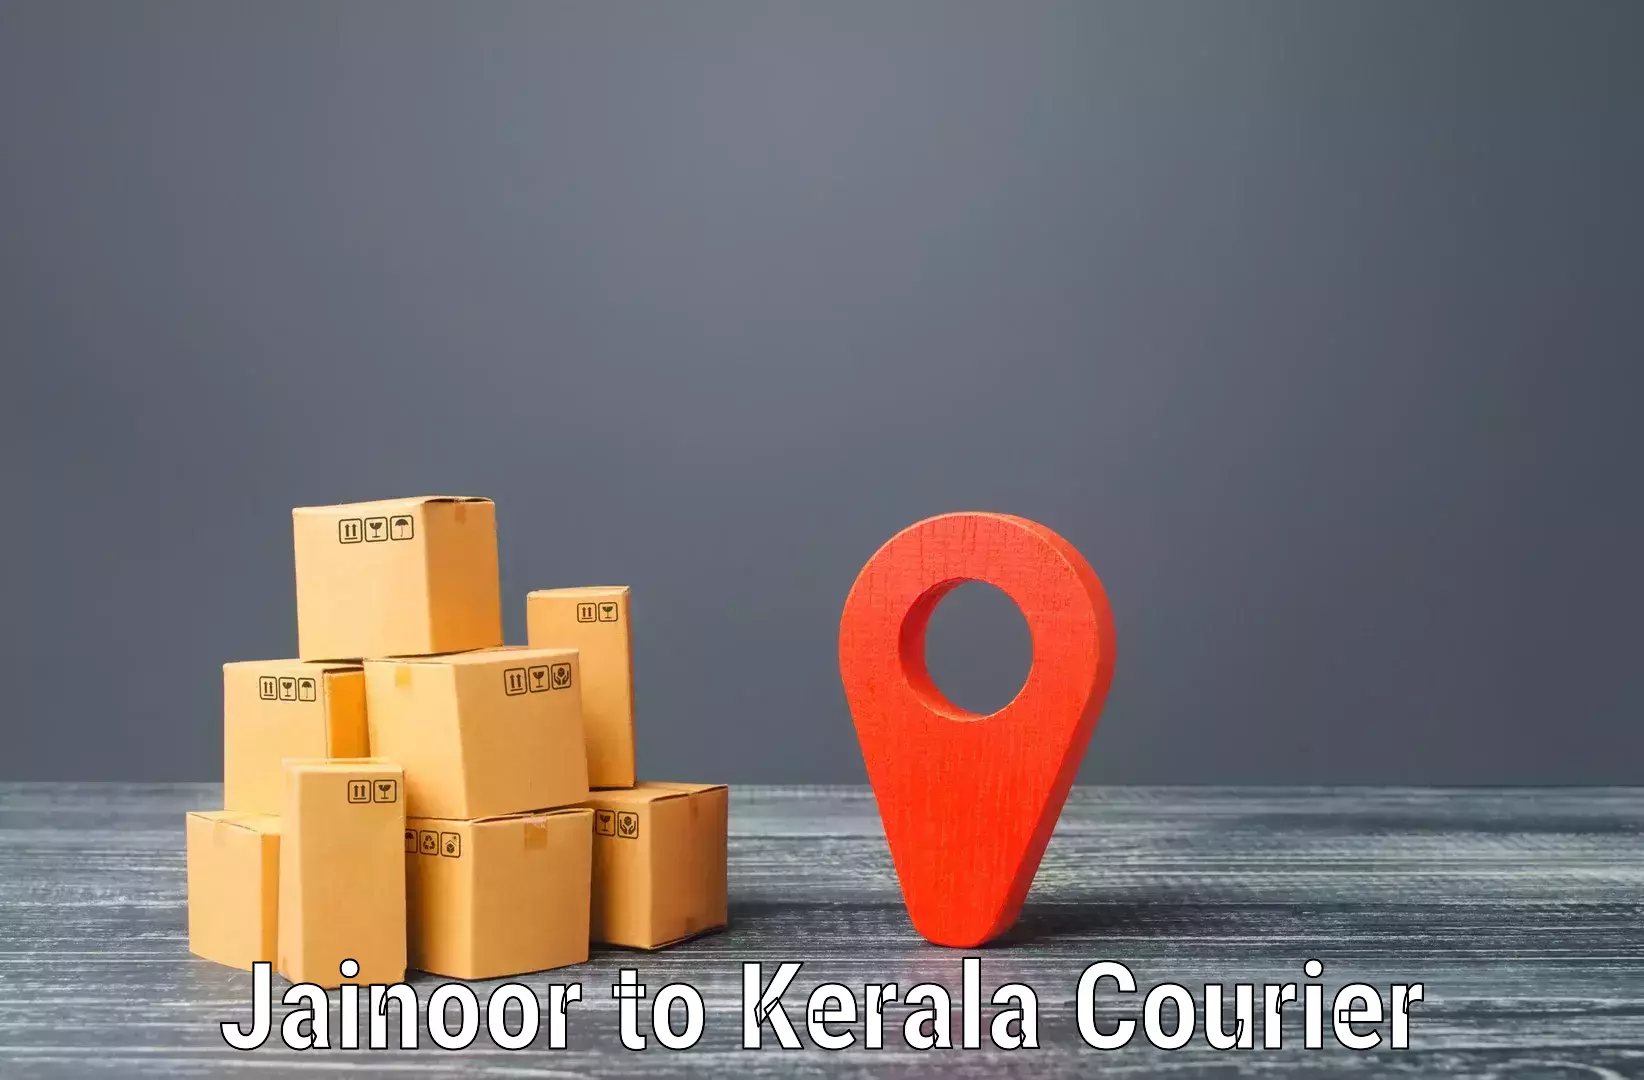 Cost-effective freight solutions Jainoor to Cochin